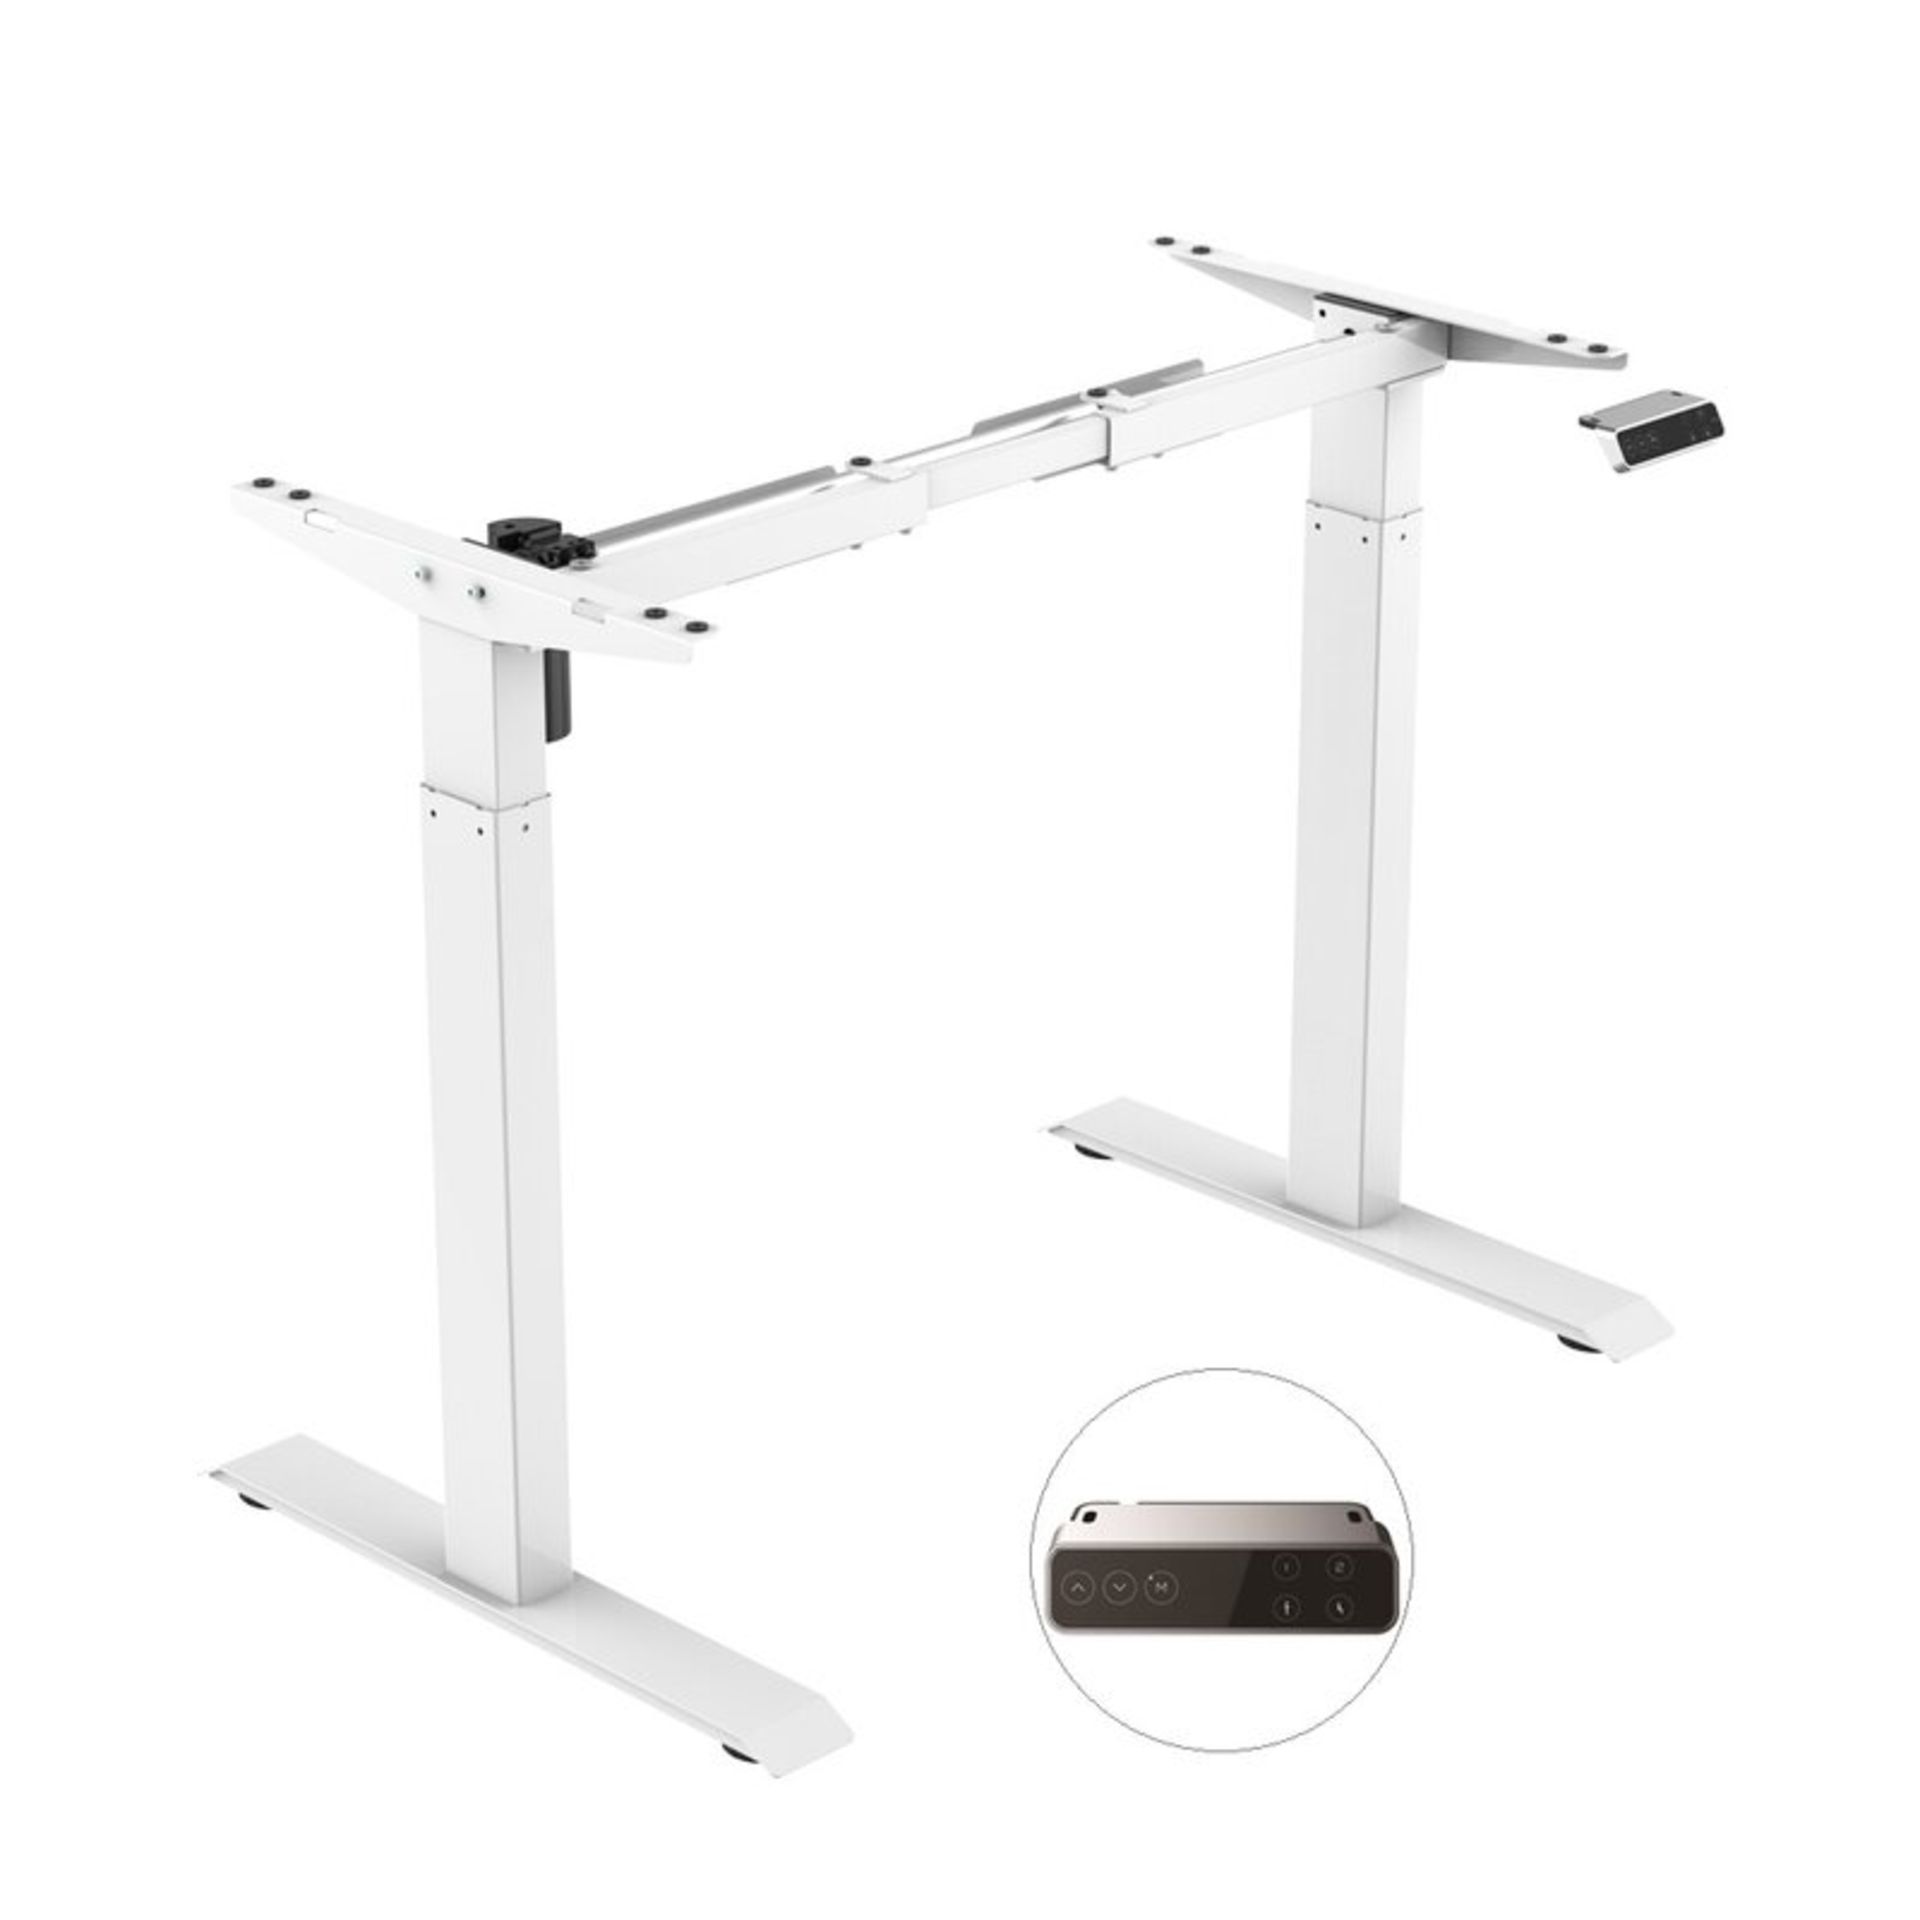 Sanodesk Ez1 Height Adjustable Standing Desk - RRP £395.99 - Image 4 of 5